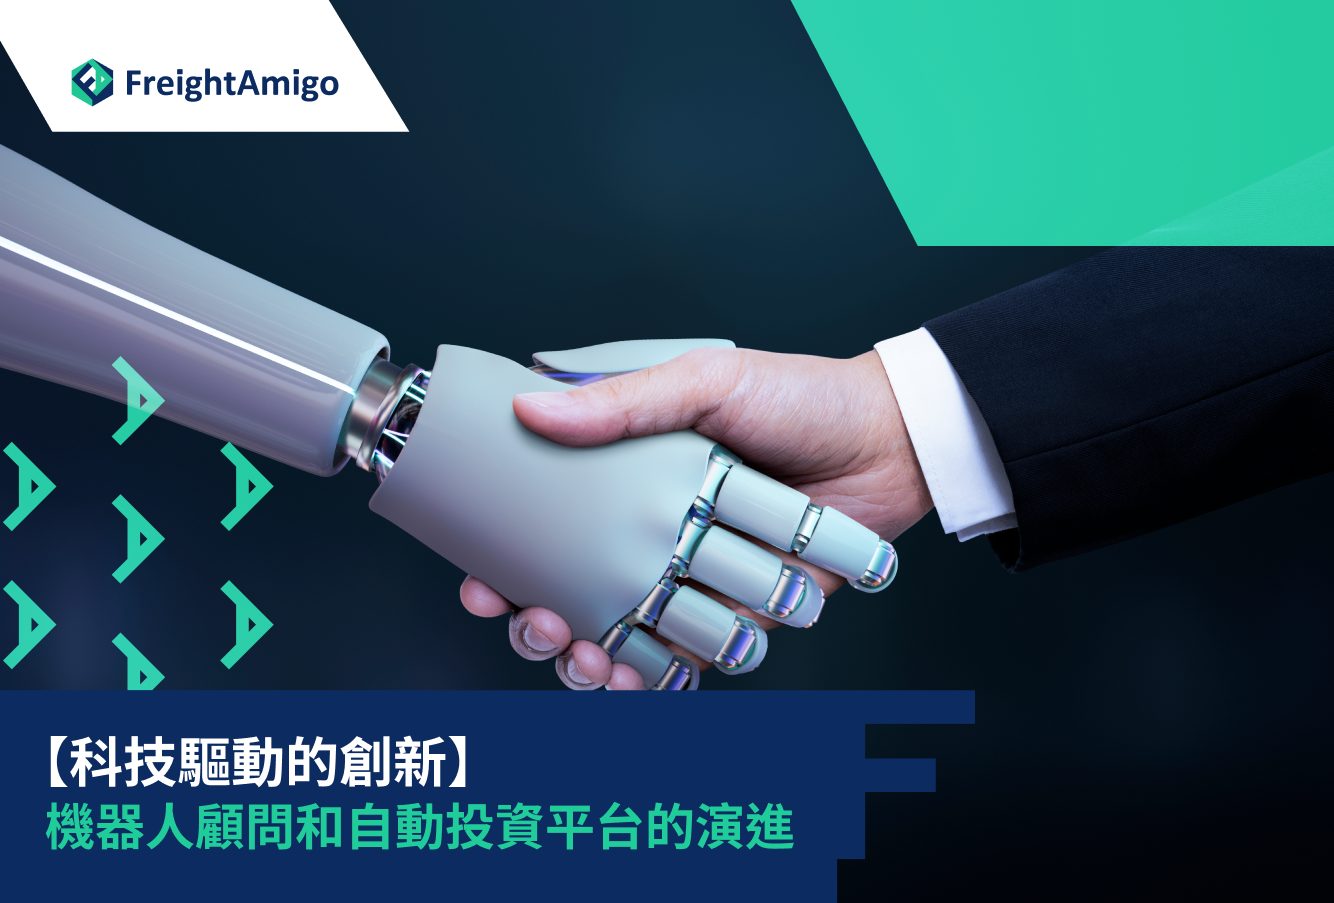 【科技驅動的創新】機器人顧問和自動投資平台的演進